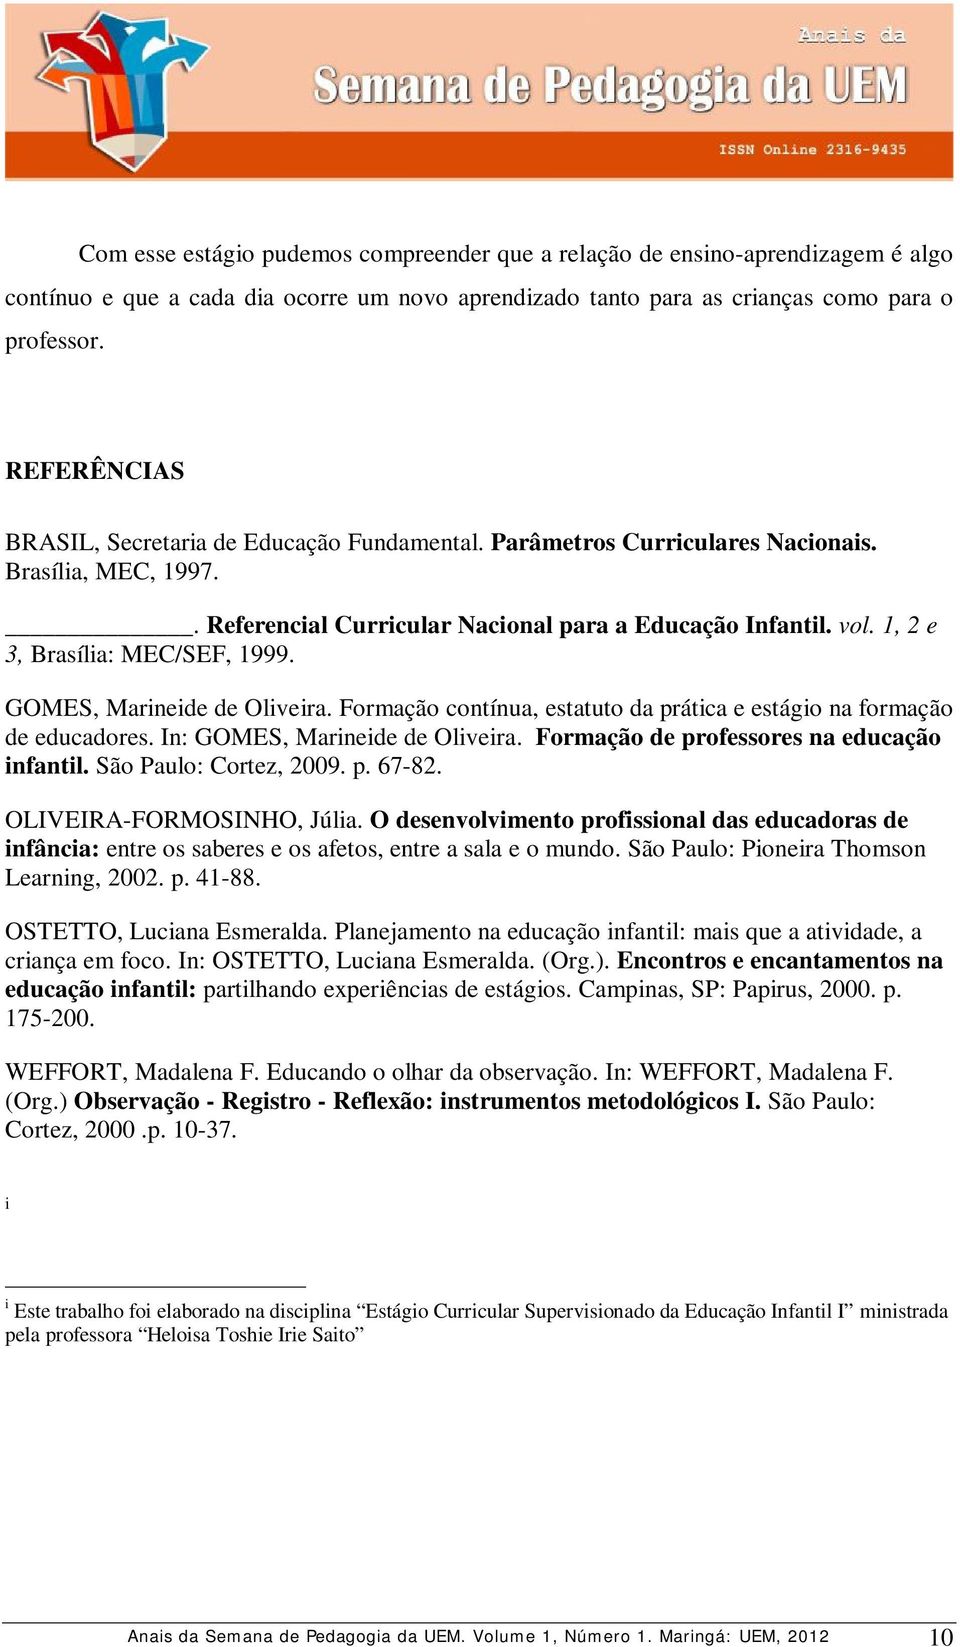 1, 2 e 3, Brasília: MEC/SEF, 1999. GOMES, Marineide de Oliveira. Formação contínua, estatuto da prática e estágio na formação de educadores. In: GOMES, Marineide de Oliveira.